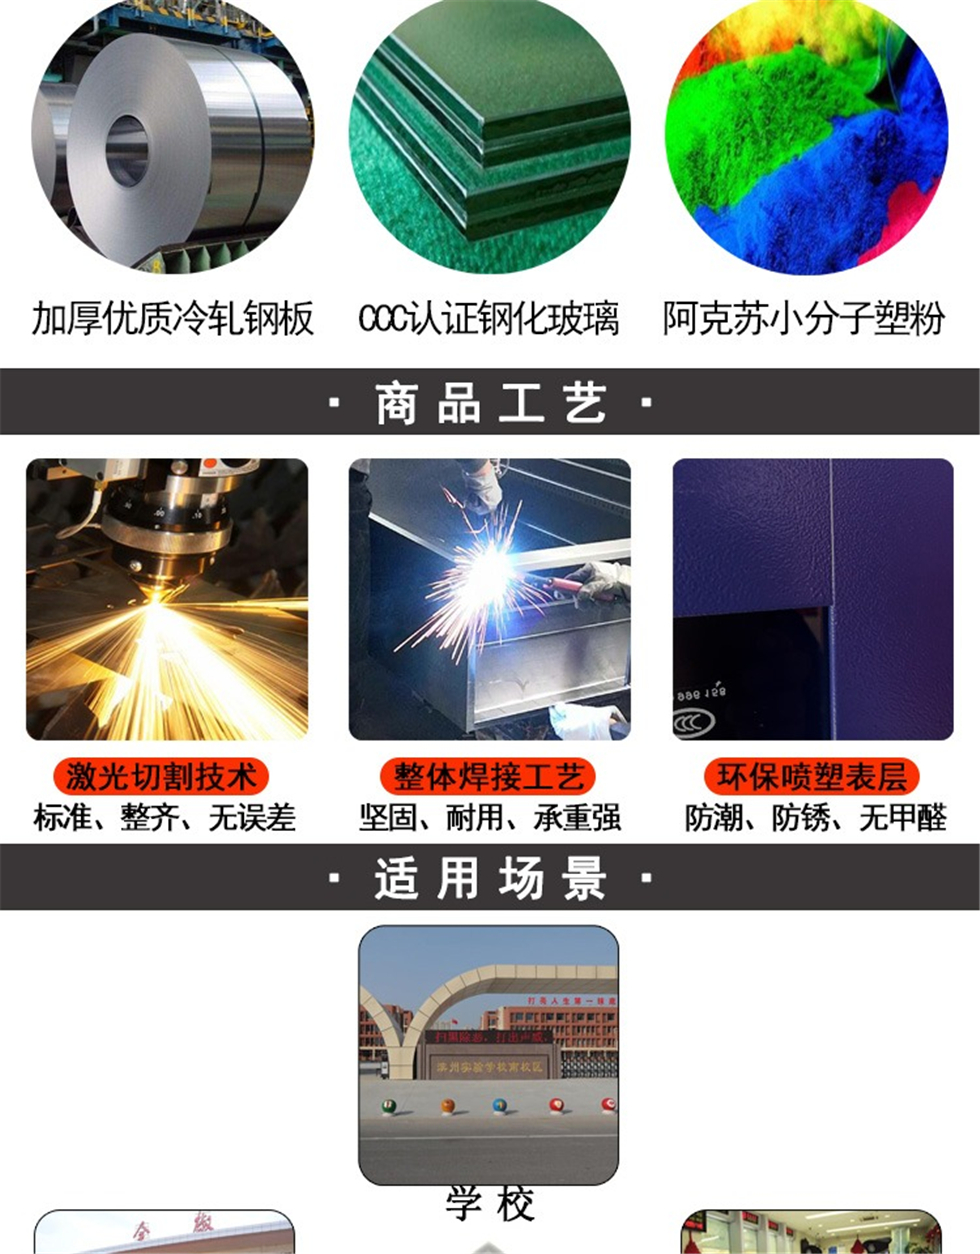 深圳智能充电柜生产